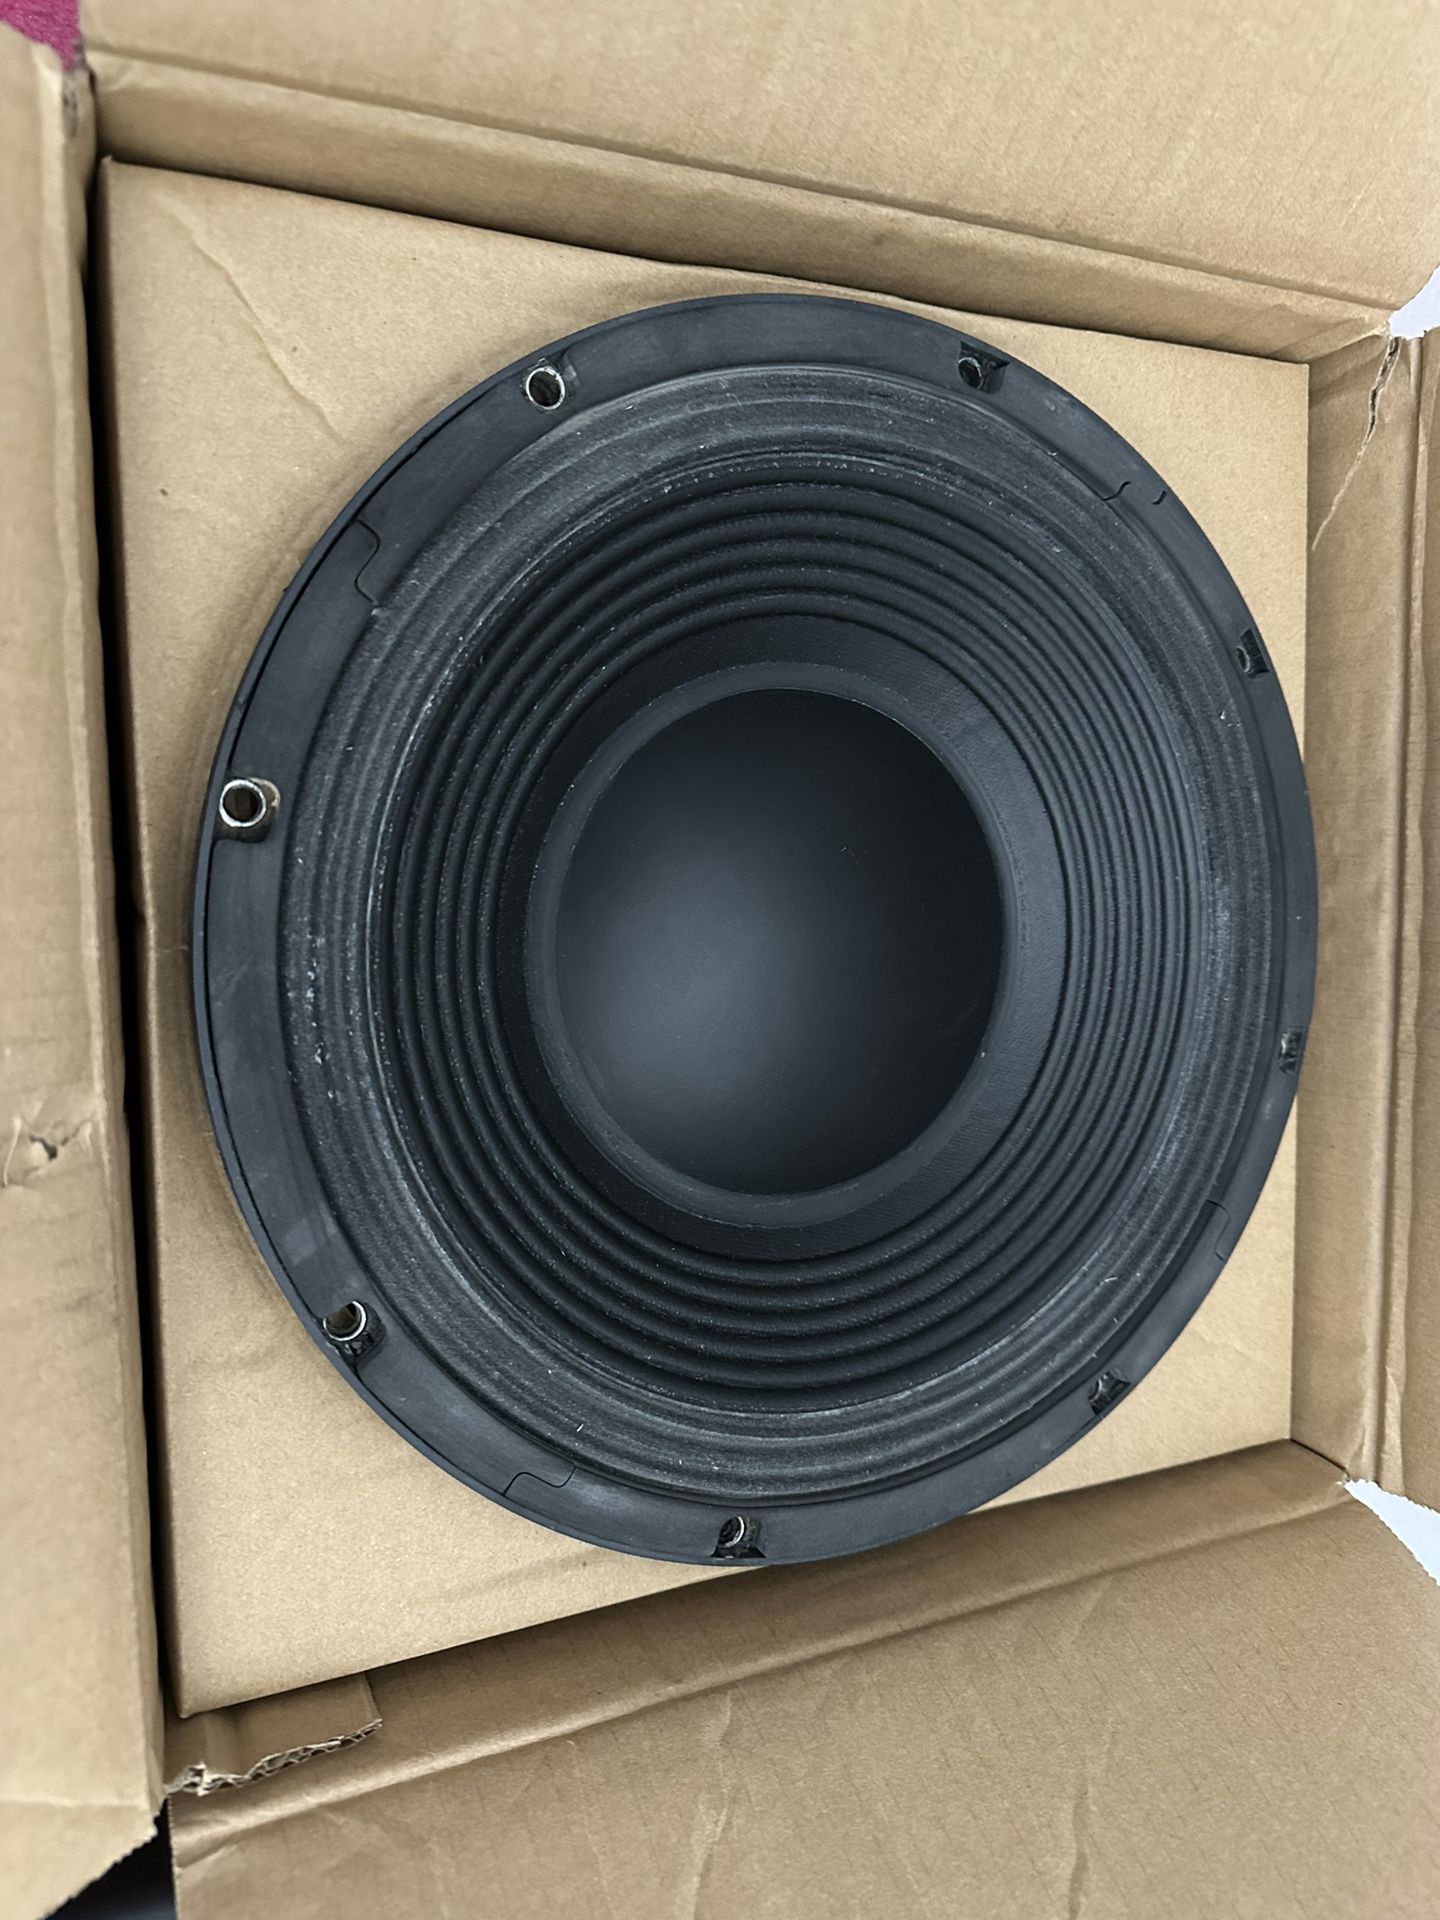 BEYMA POWER12PNd 12” WOOFER 1000 W/4 Ohms Car Speaker. Made in Spain